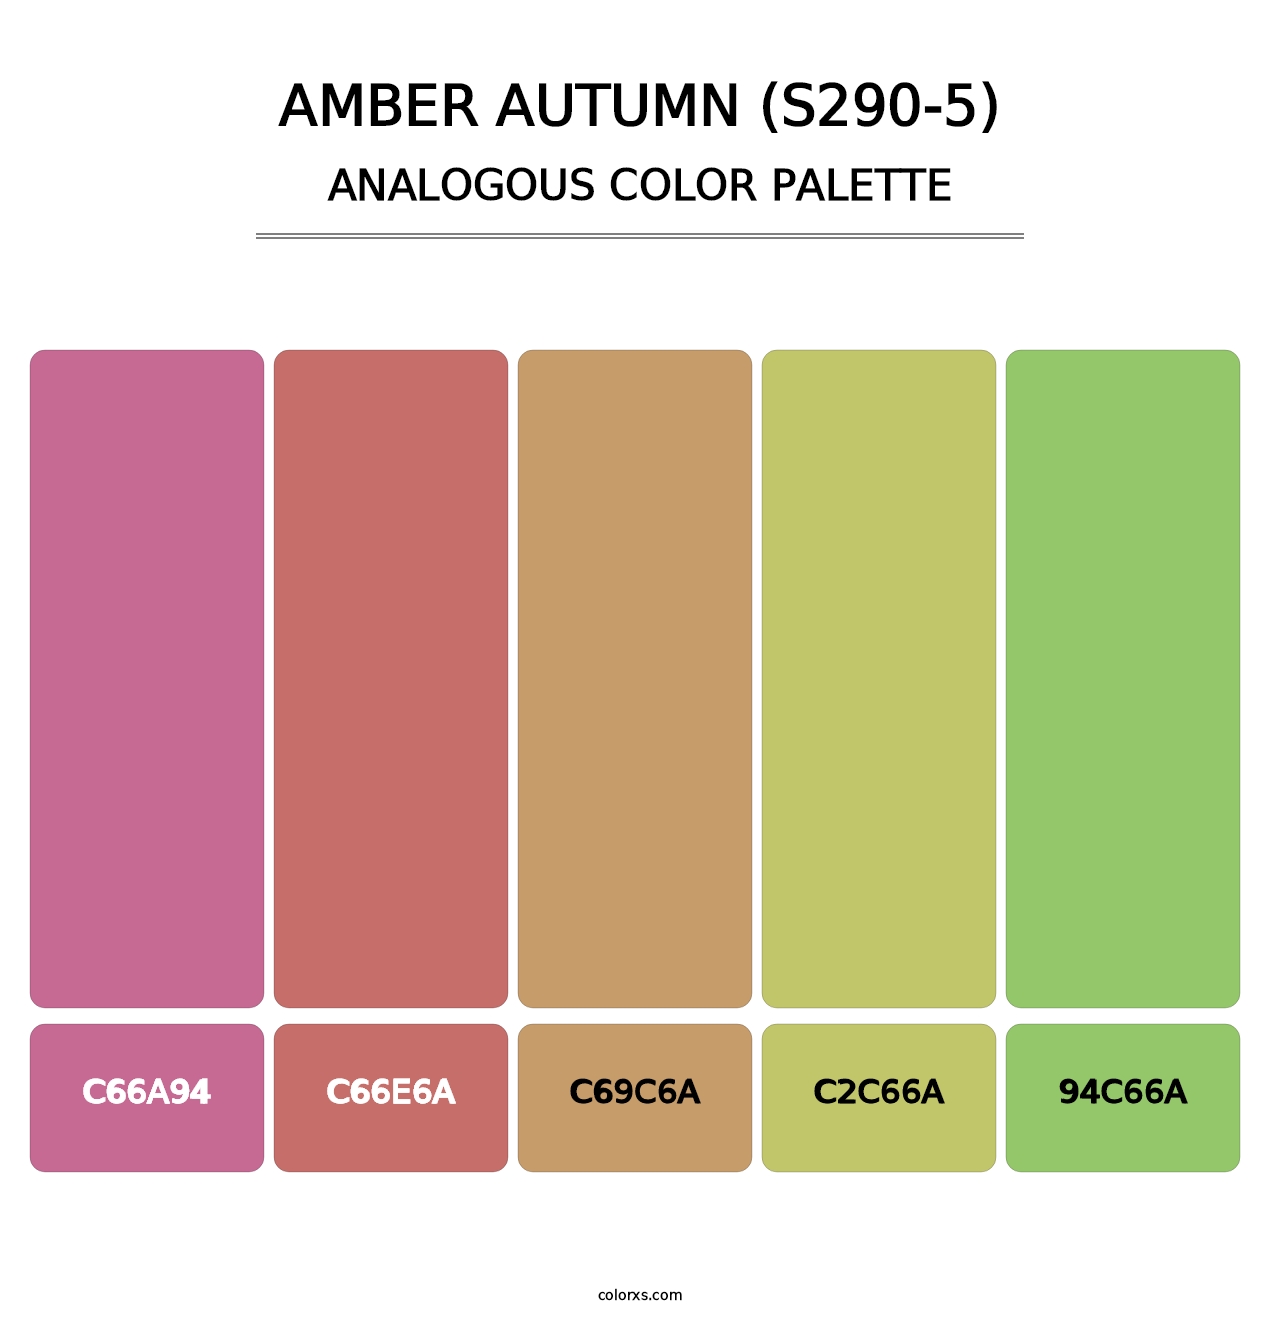 Amber Autumn (S290-5) - Analogous Color Palette